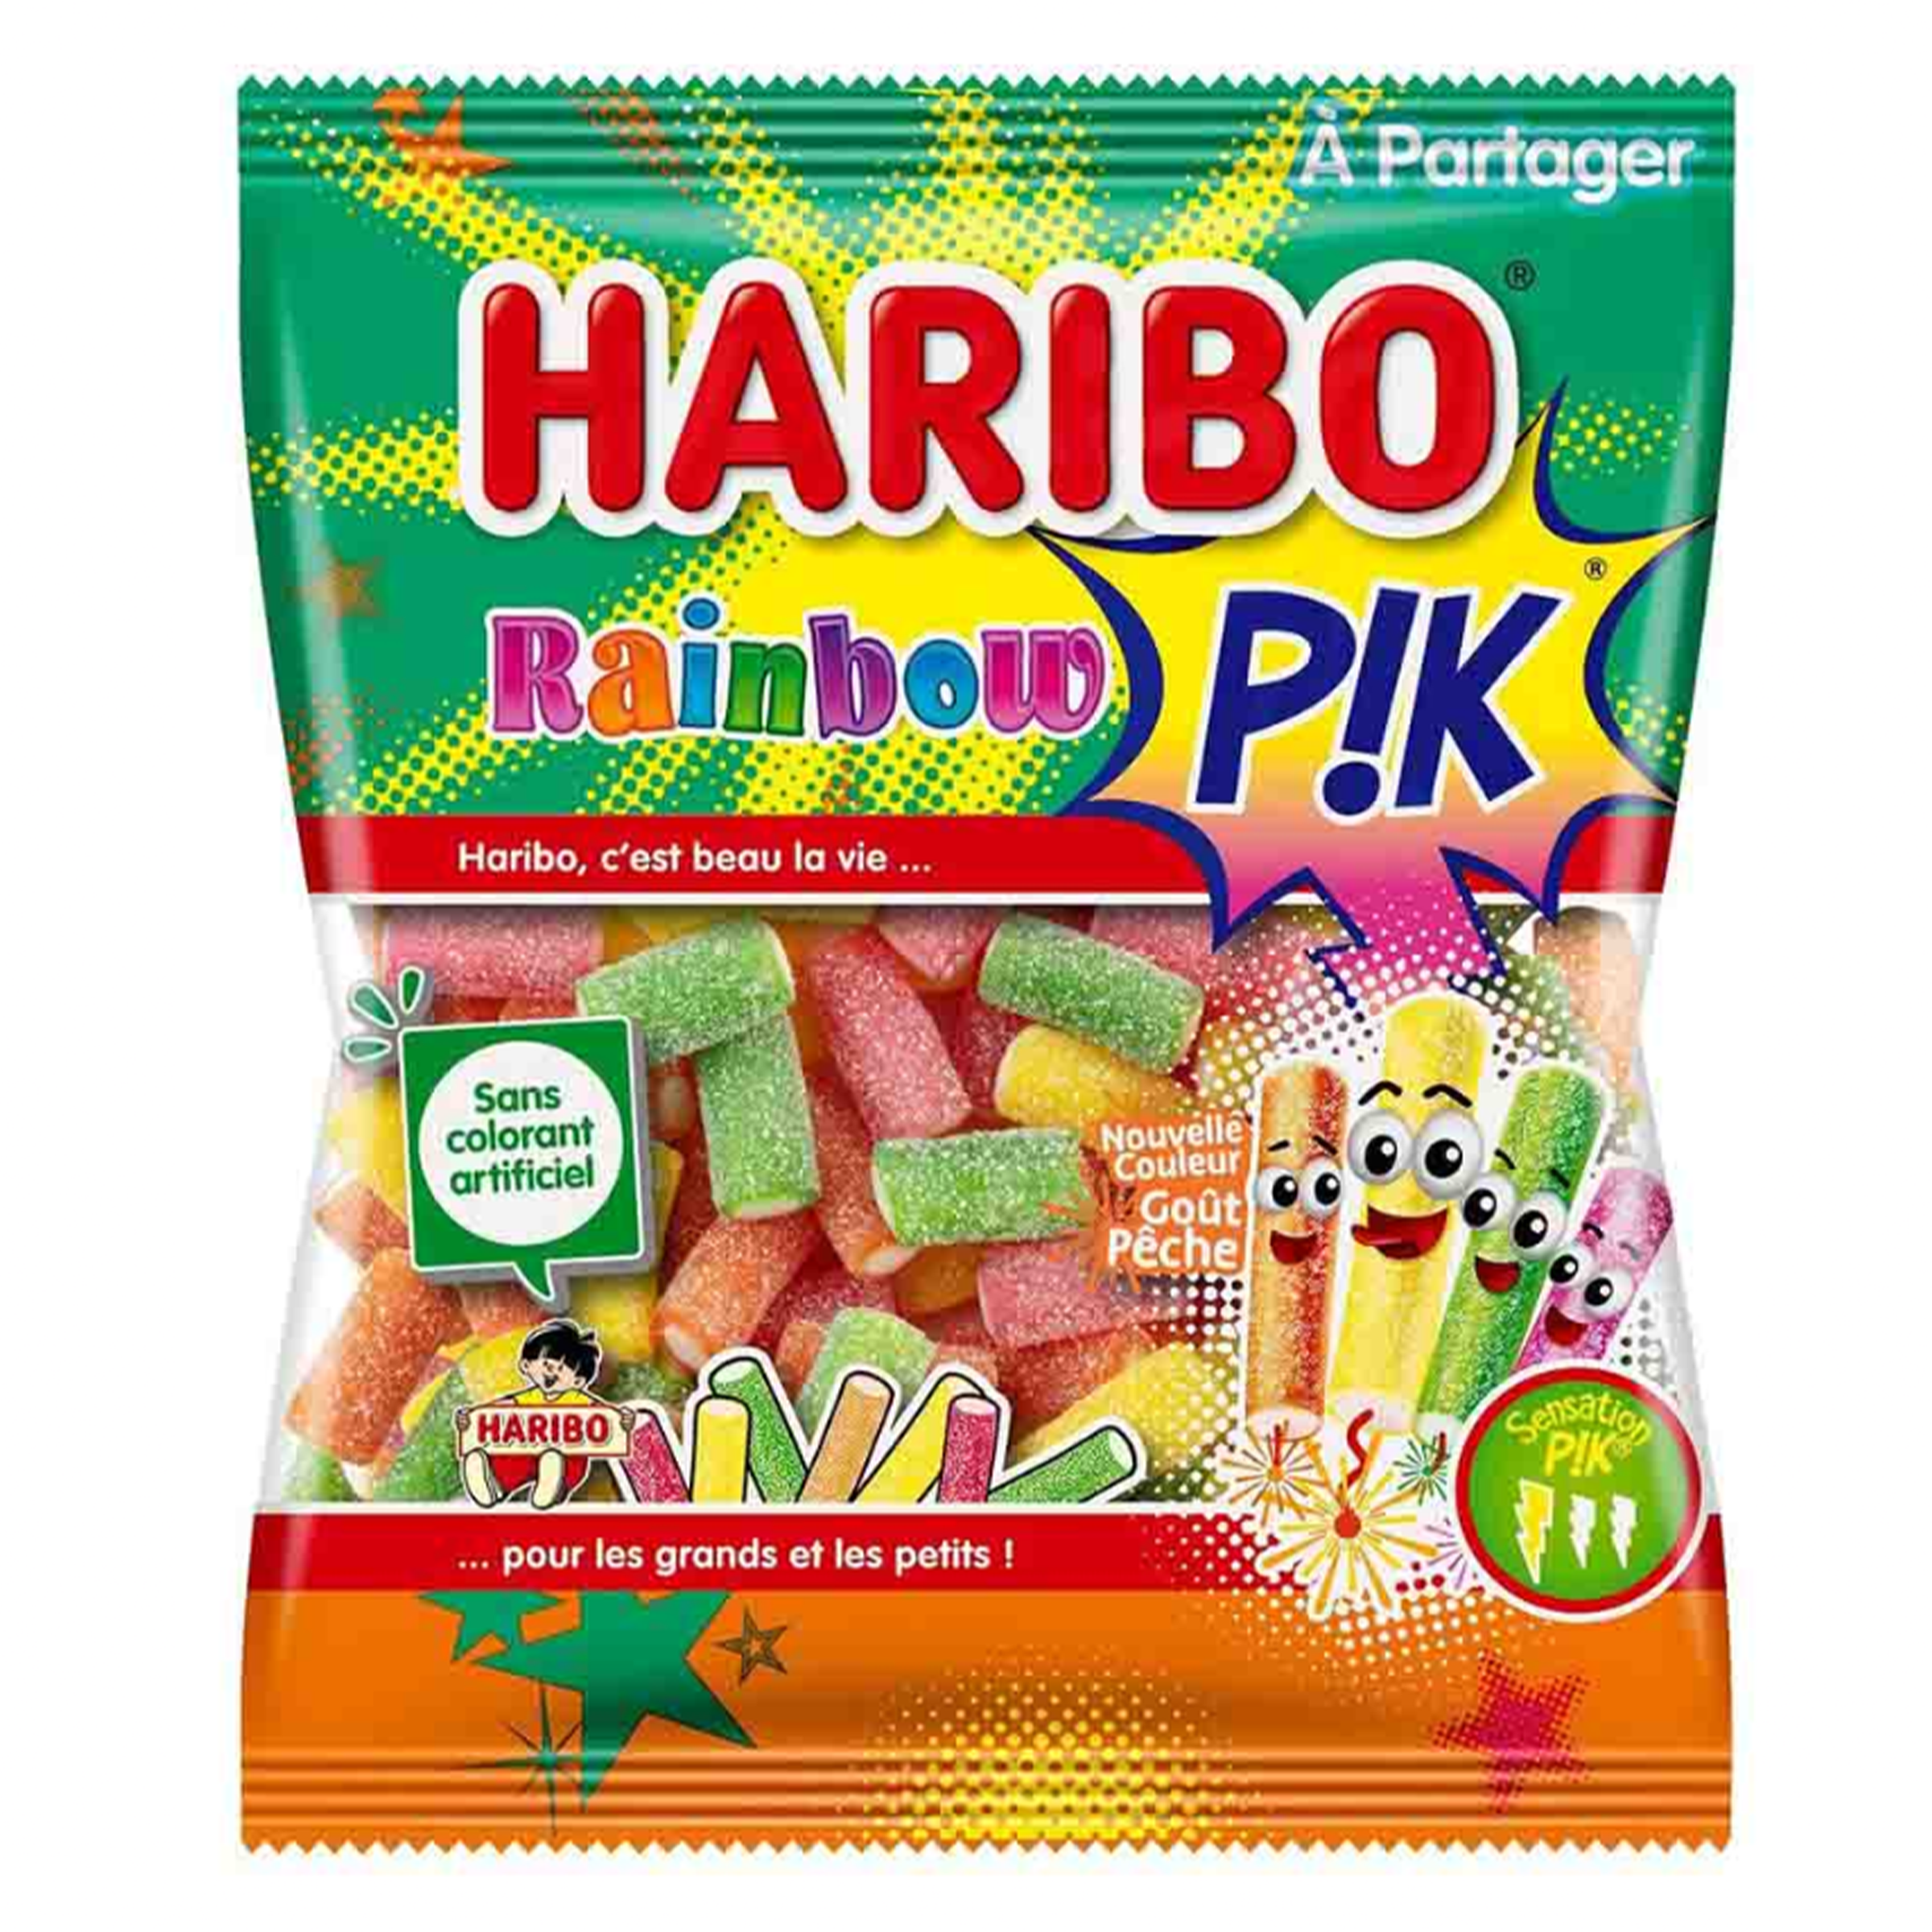 Haribo - Rainbow P!k (Europe)